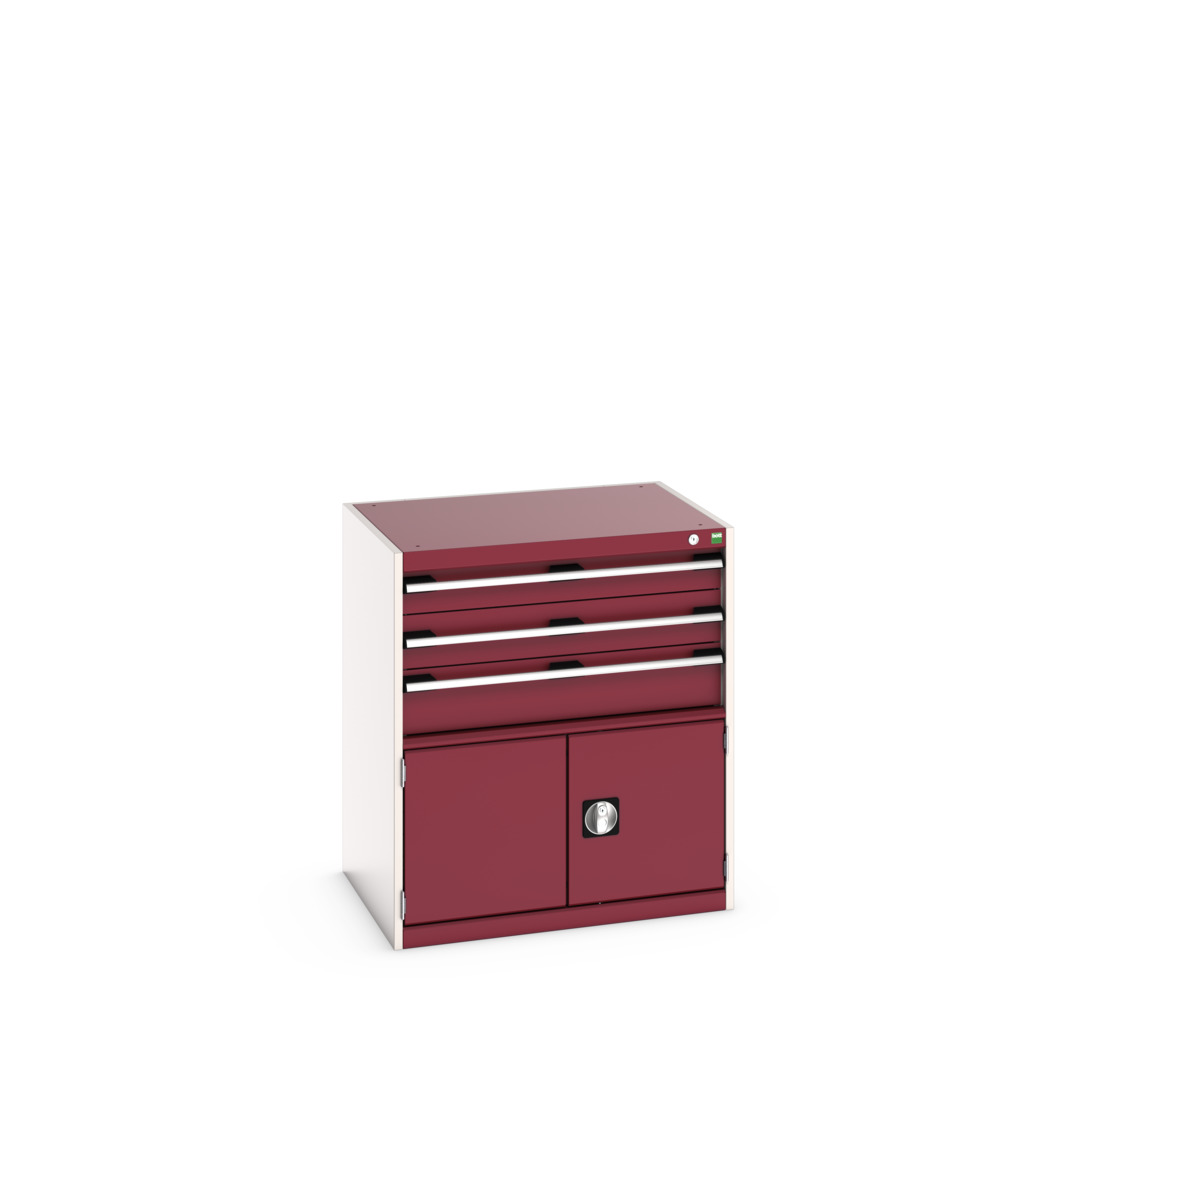 40020033.24V - cubio drawer-door cabinet